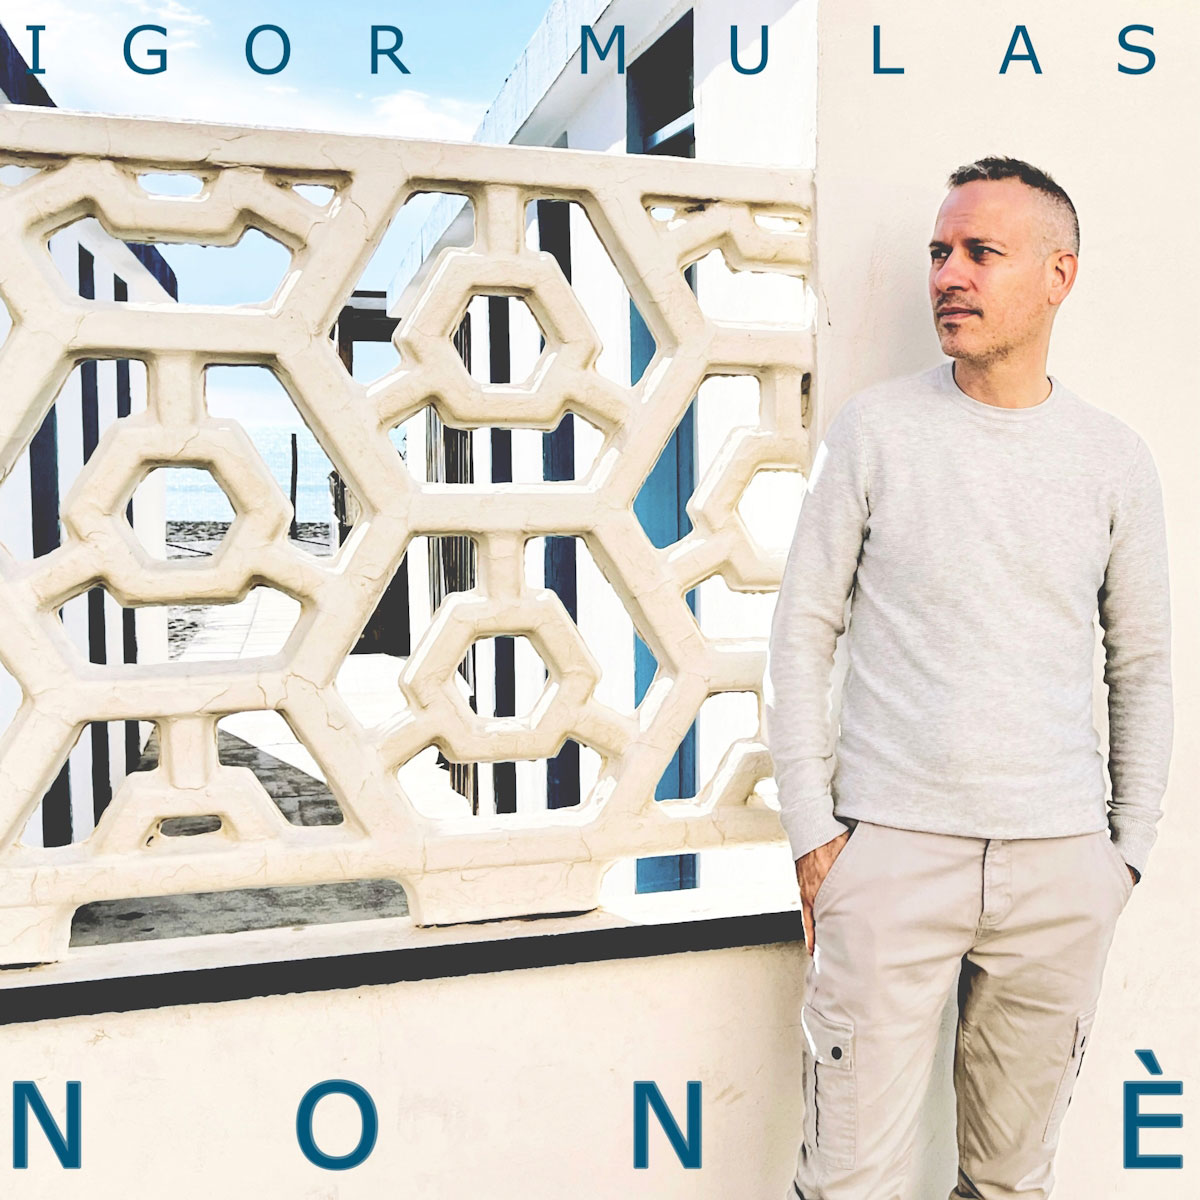 Al momento stai visualizzando “Non è” è il nuovo singolo di Igor Mulas